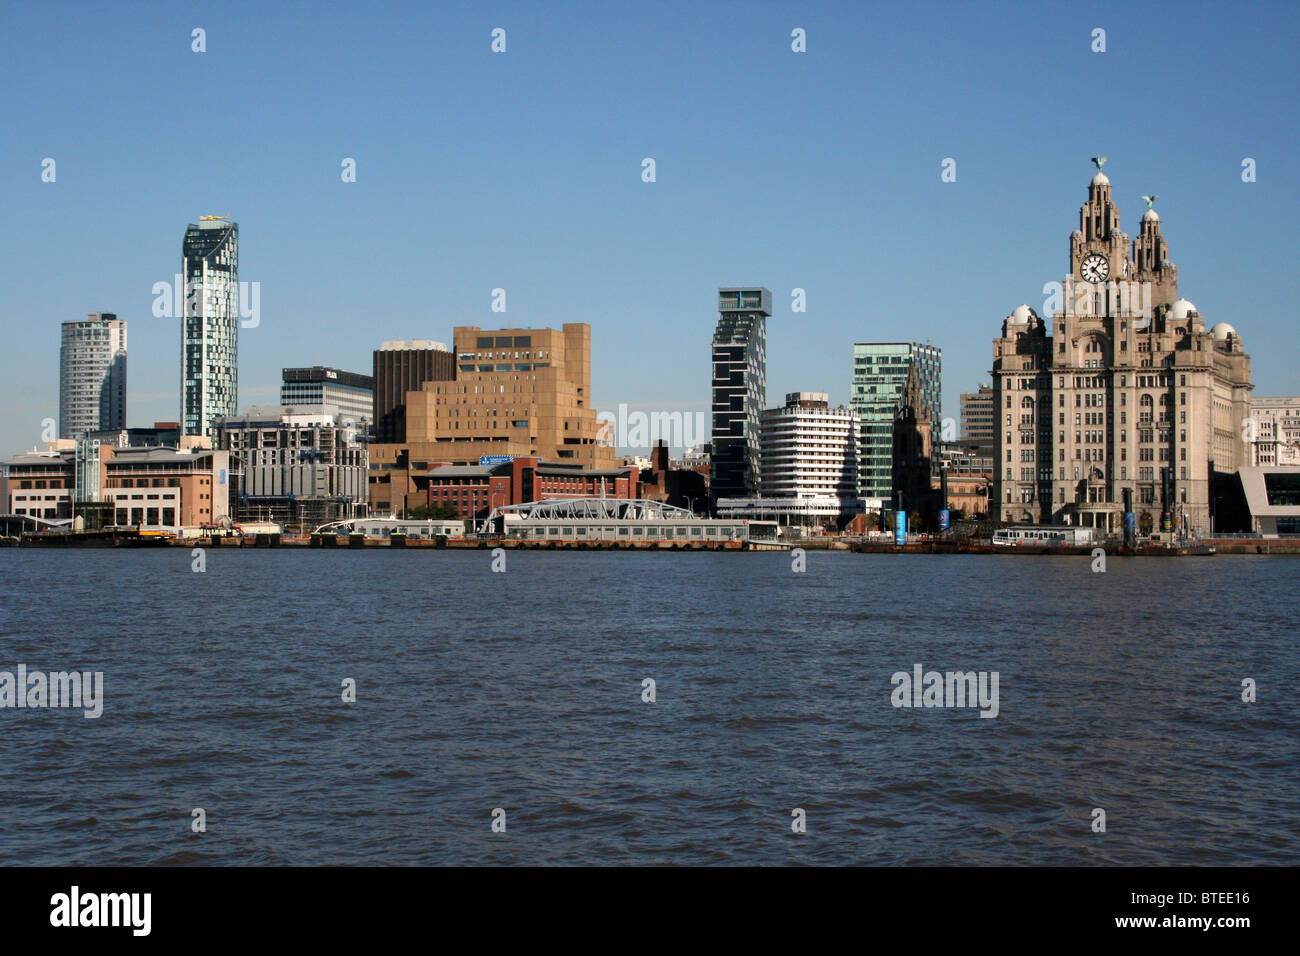 Toits de Liverpool comme vu de la rivière Mersey, UK Banque D'Images